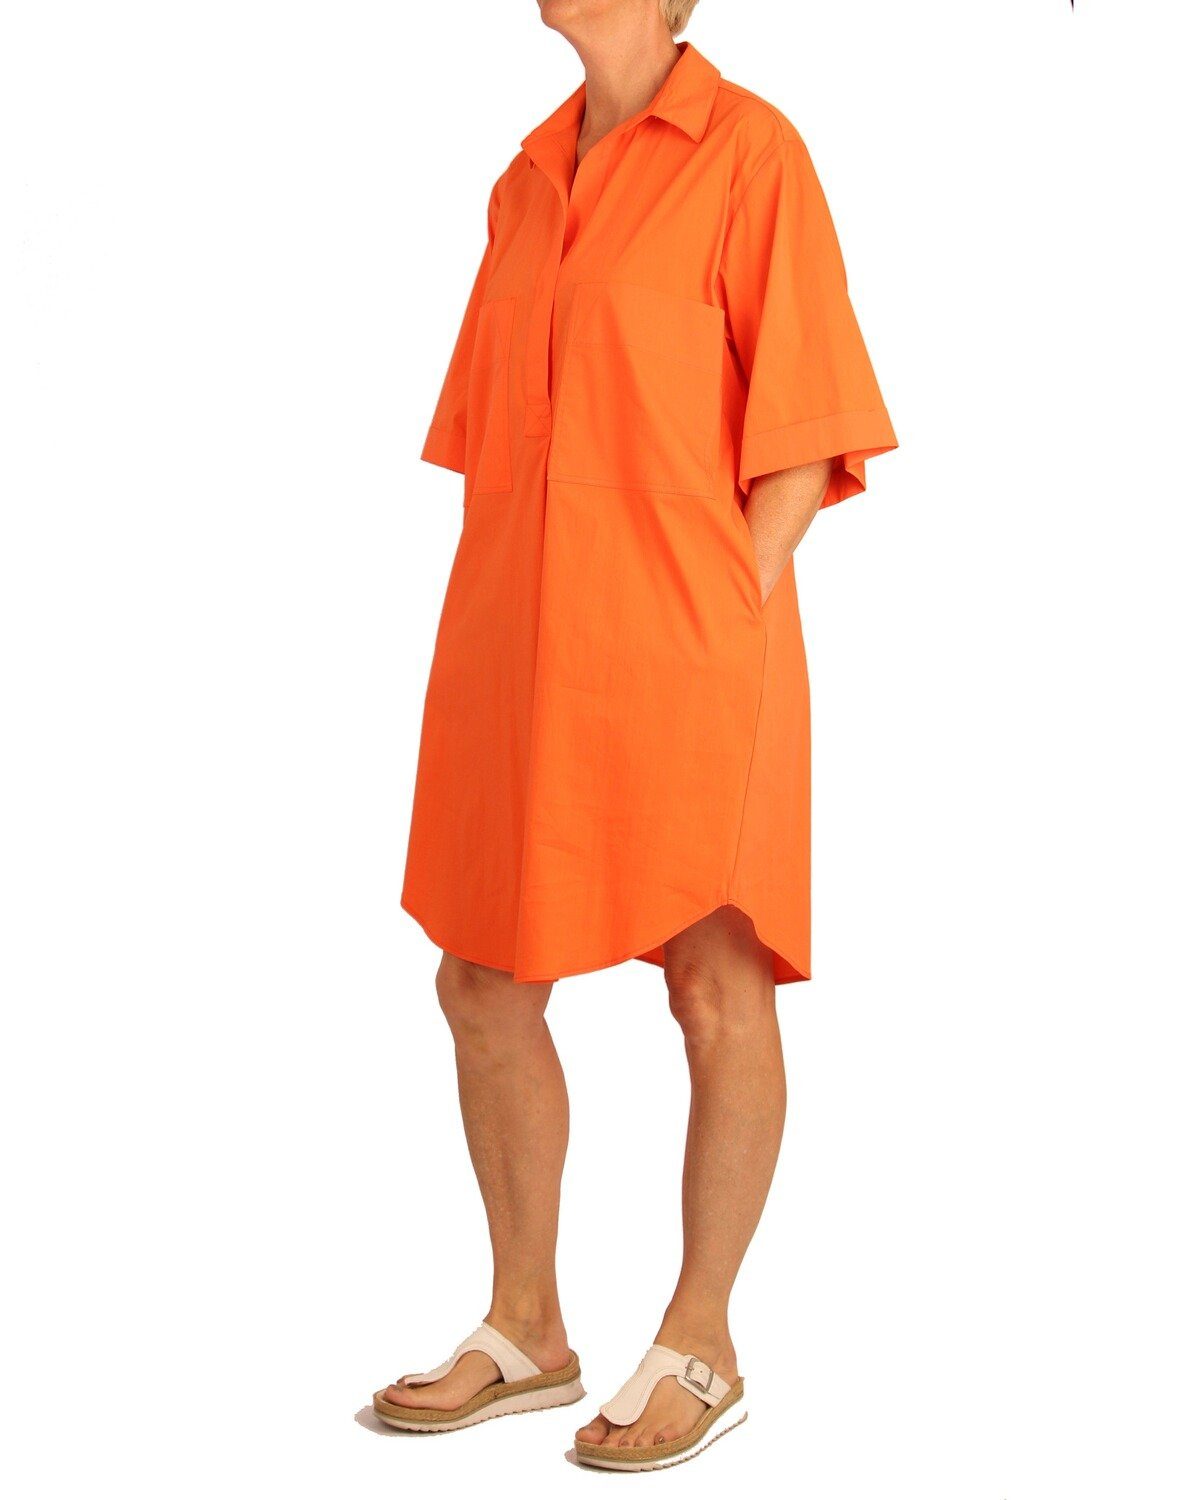 Hemdblusenkleid Kaftankleid Label Orange White